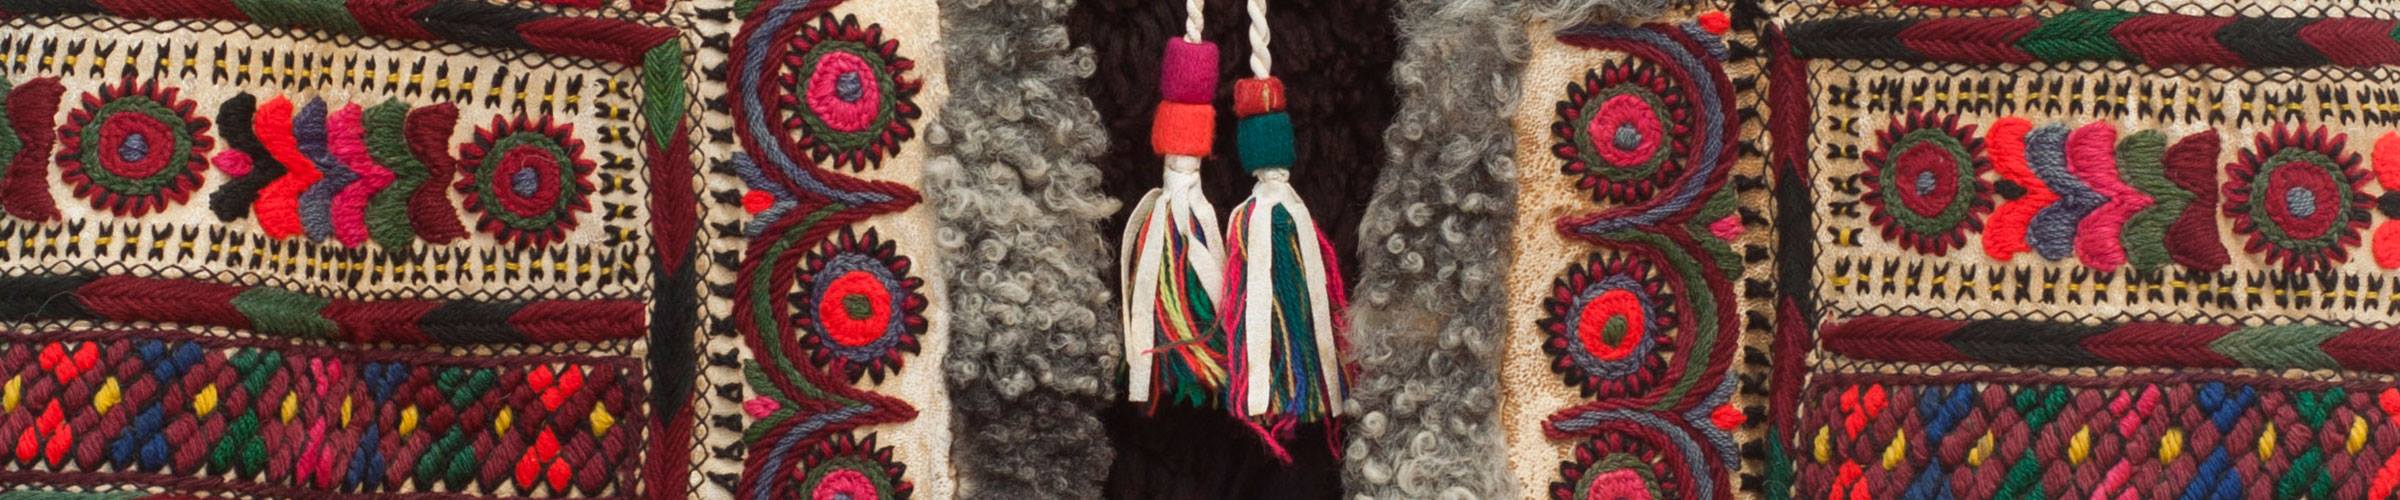 Csángó folk costumes